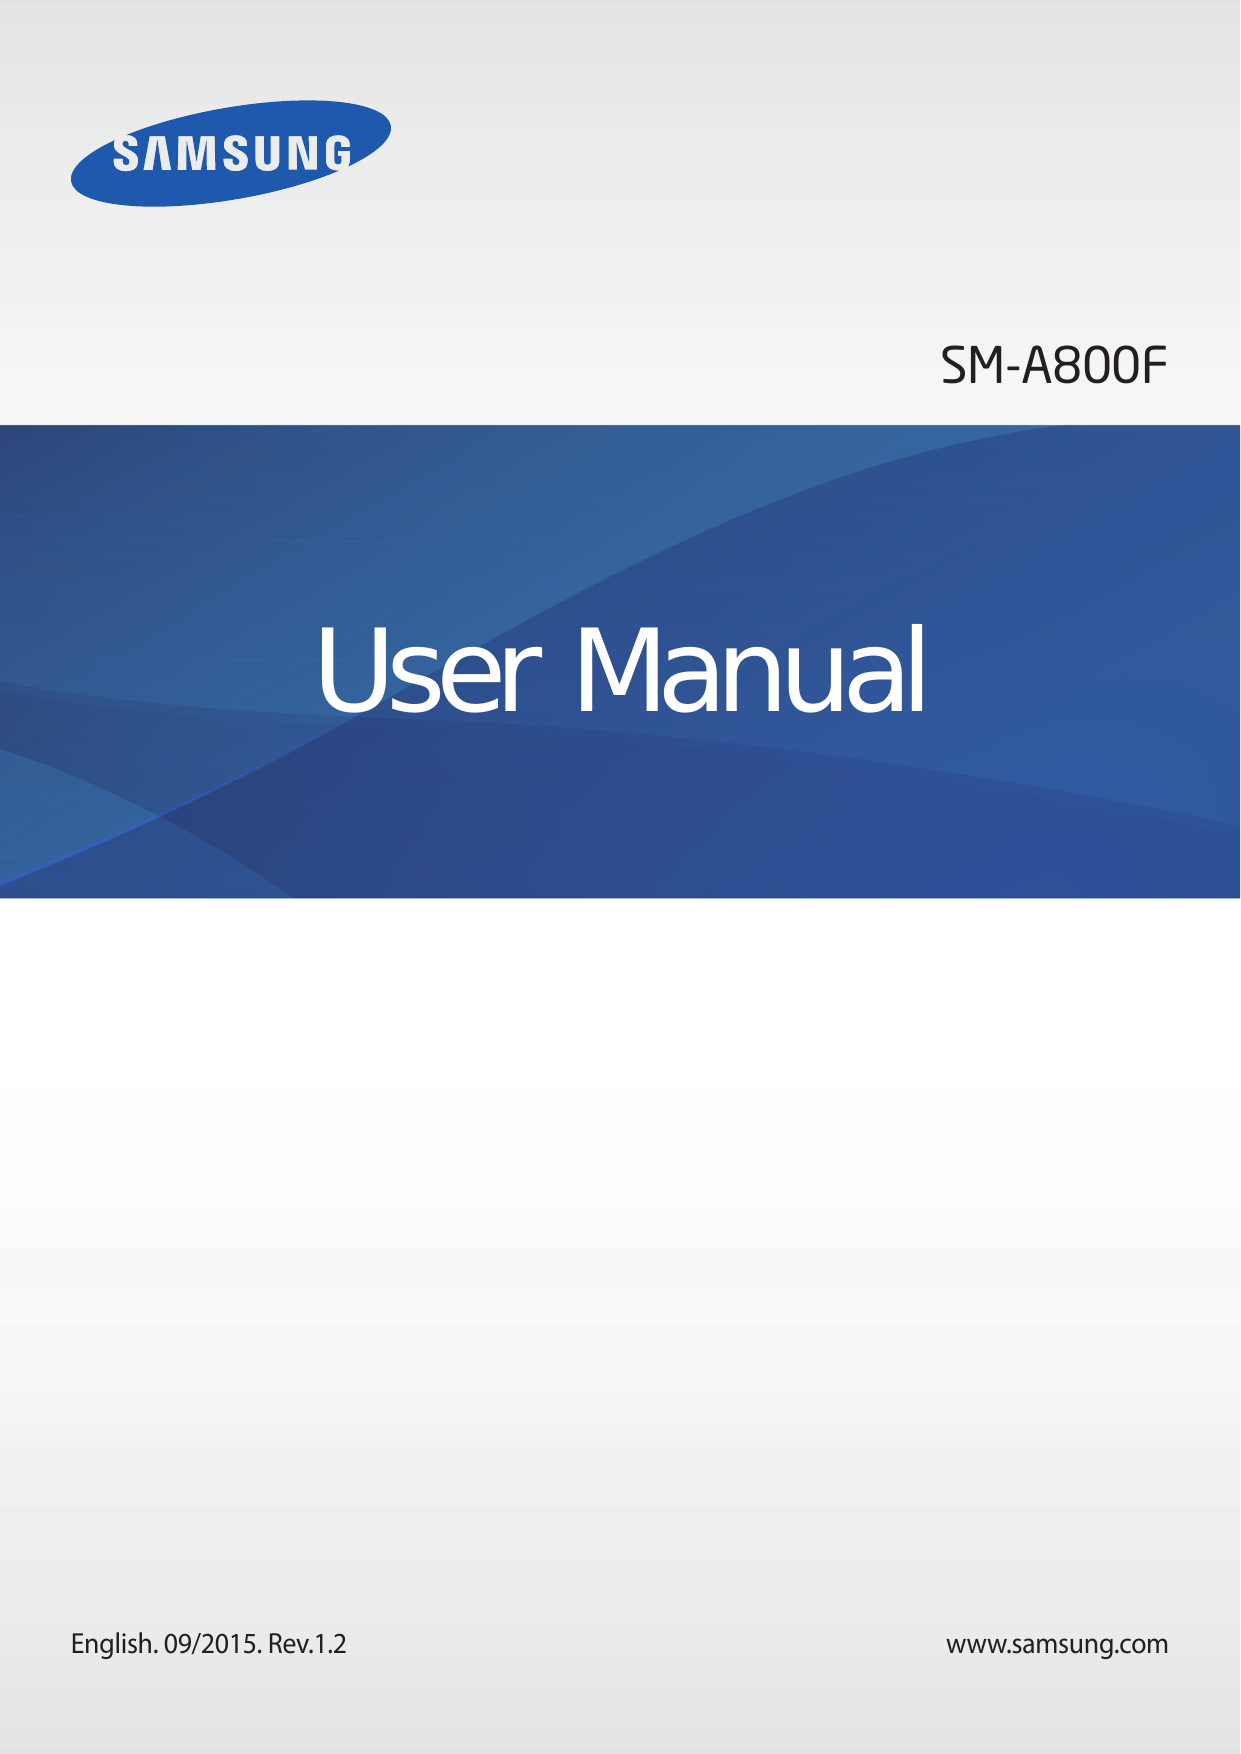 SM-A800FUser ManualEnglish. 09/2015. Rev.1.2www.samsung.com